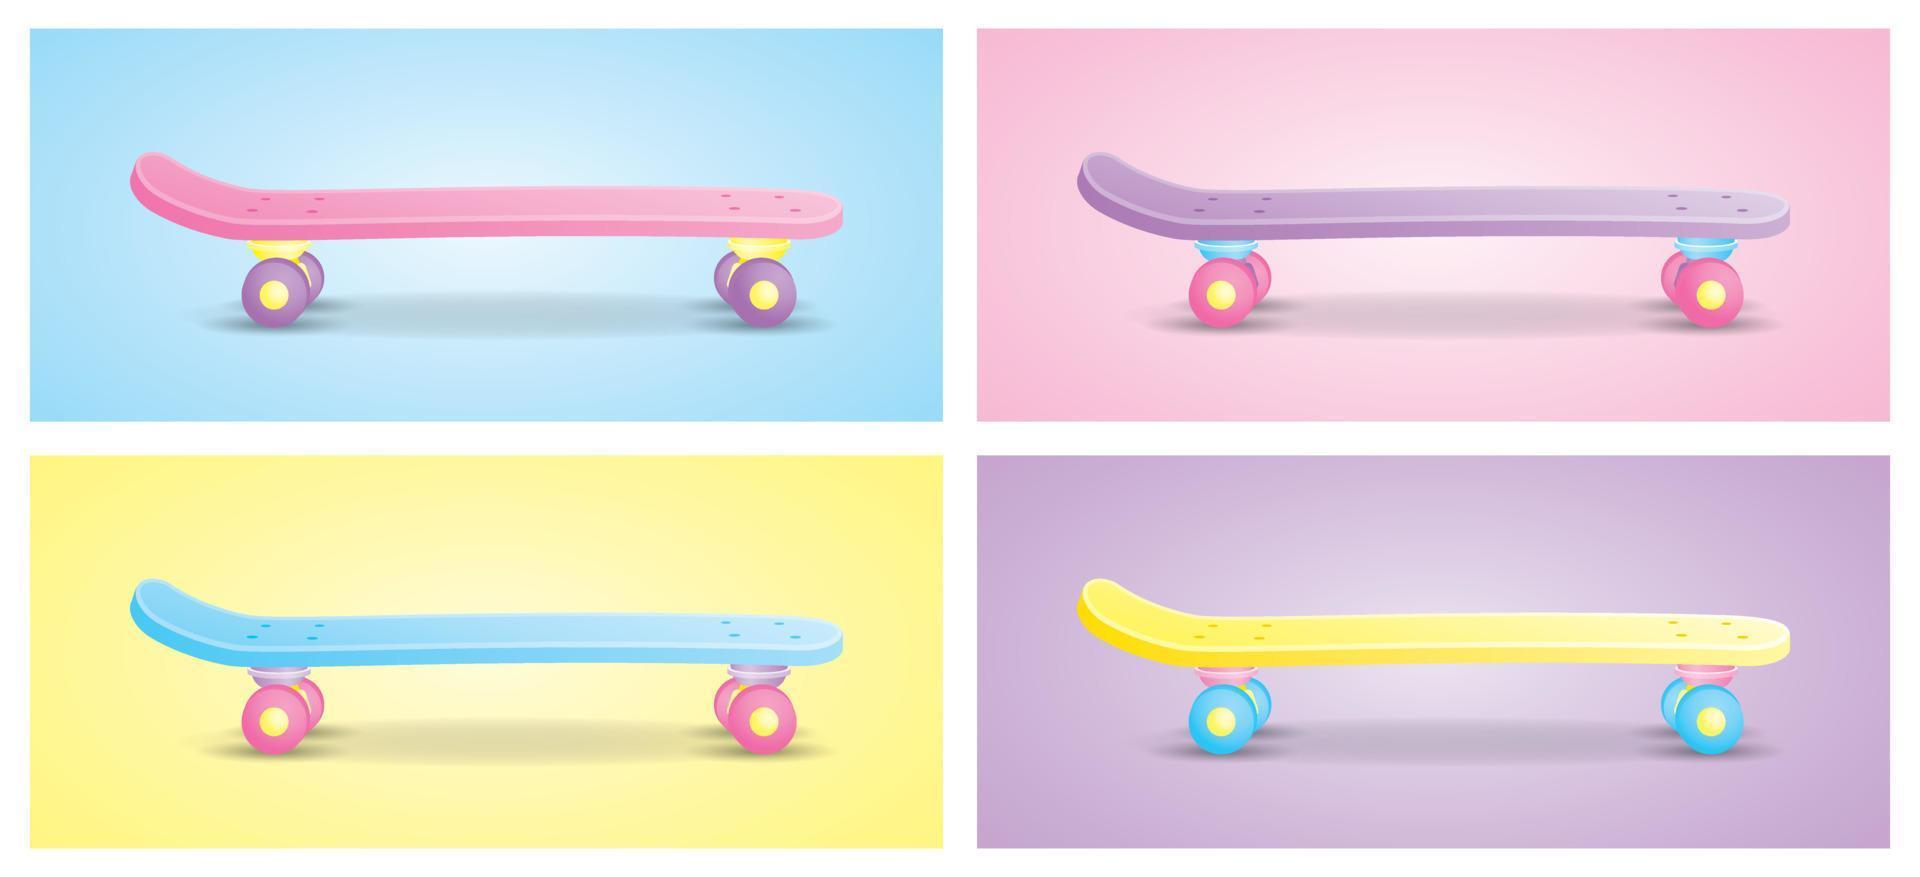 carino girly pastello skatebord illustrazione vettore raccolta